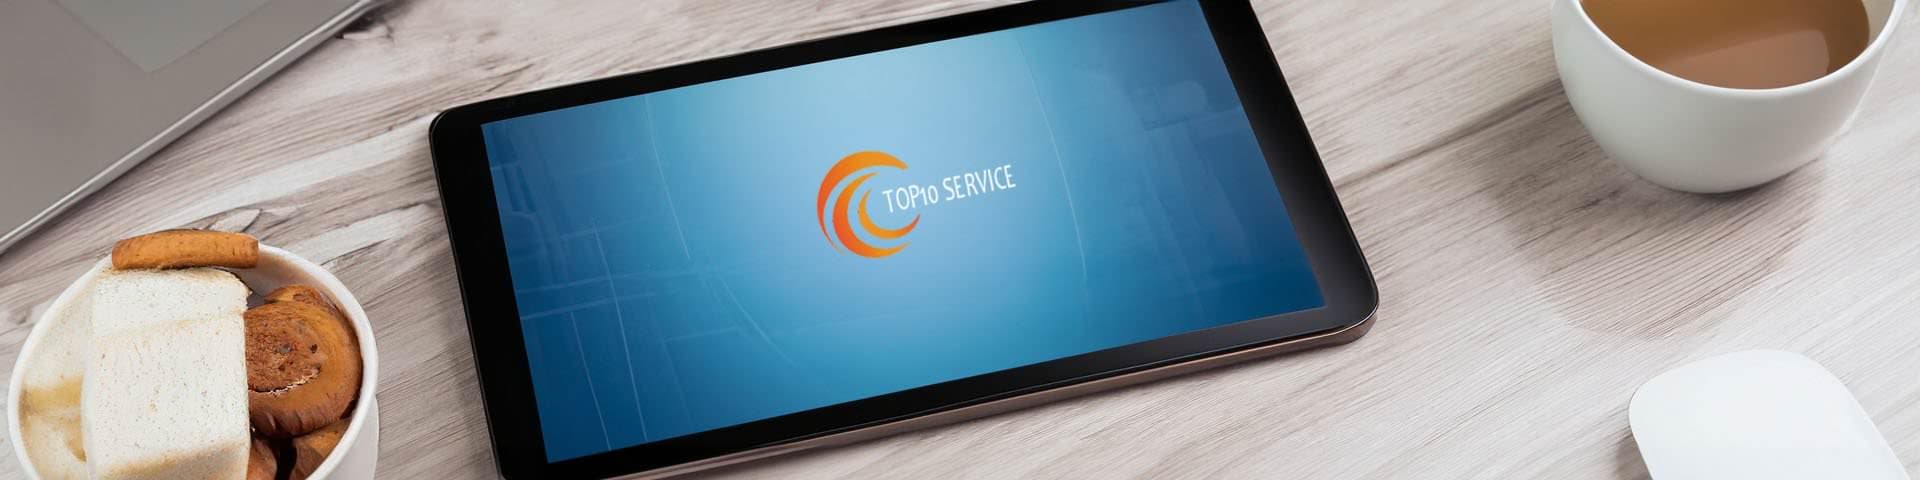 Tablet mit Logo von Top10 Service.